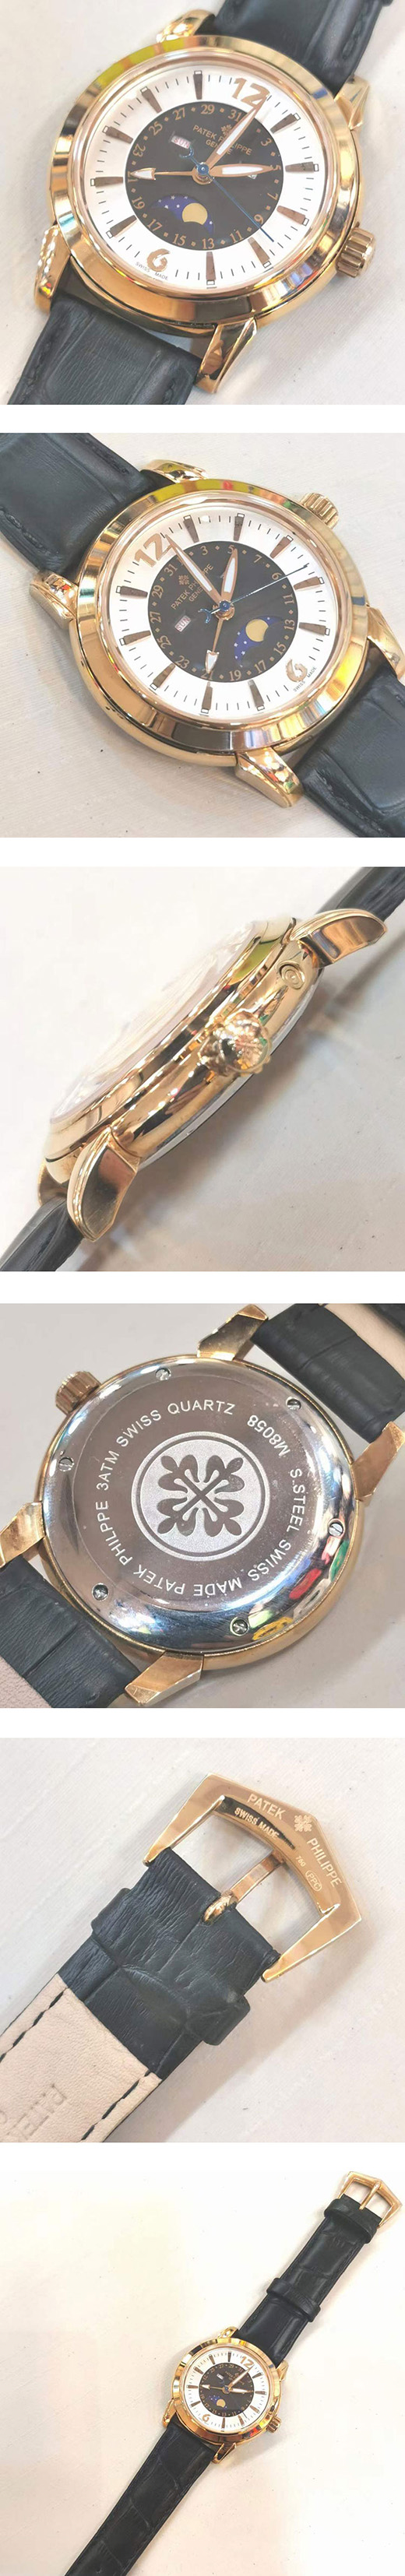 パテックフィリップコピー多機能腕時計、負担無し楽に買い物